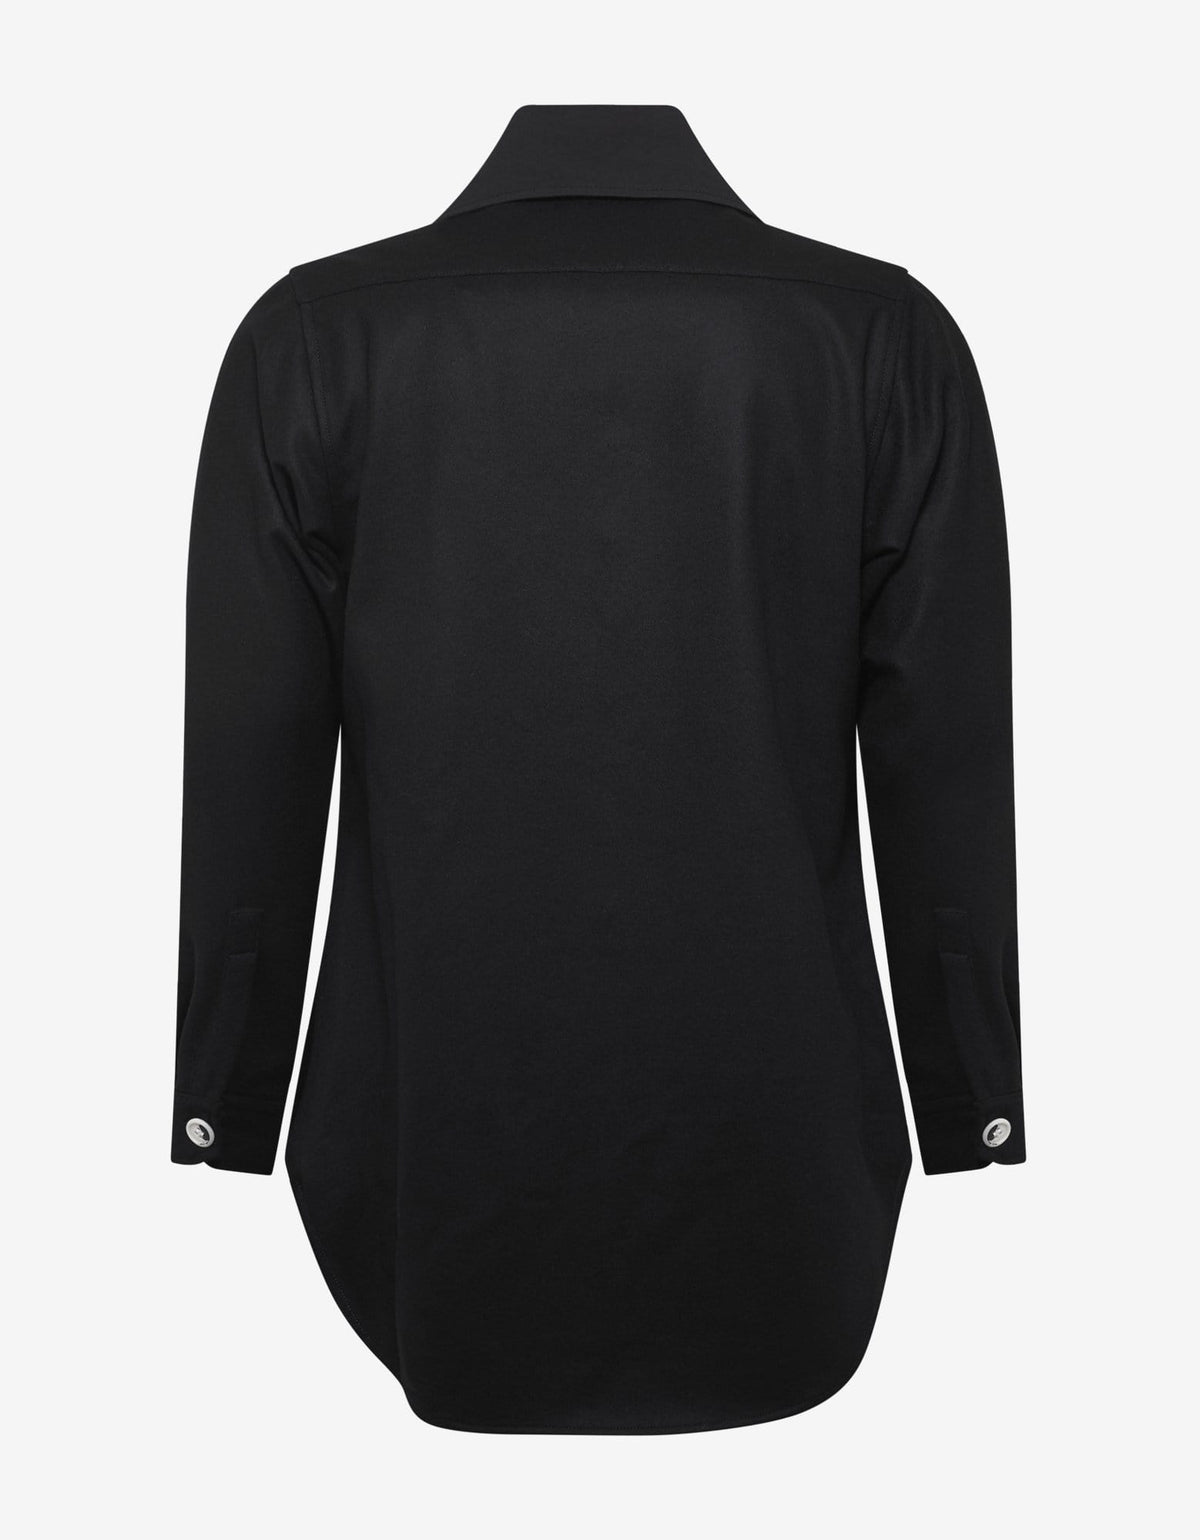 Yohji Yamamoto Yohji Yamamoto Black Stole Collar Embroidered Shirt